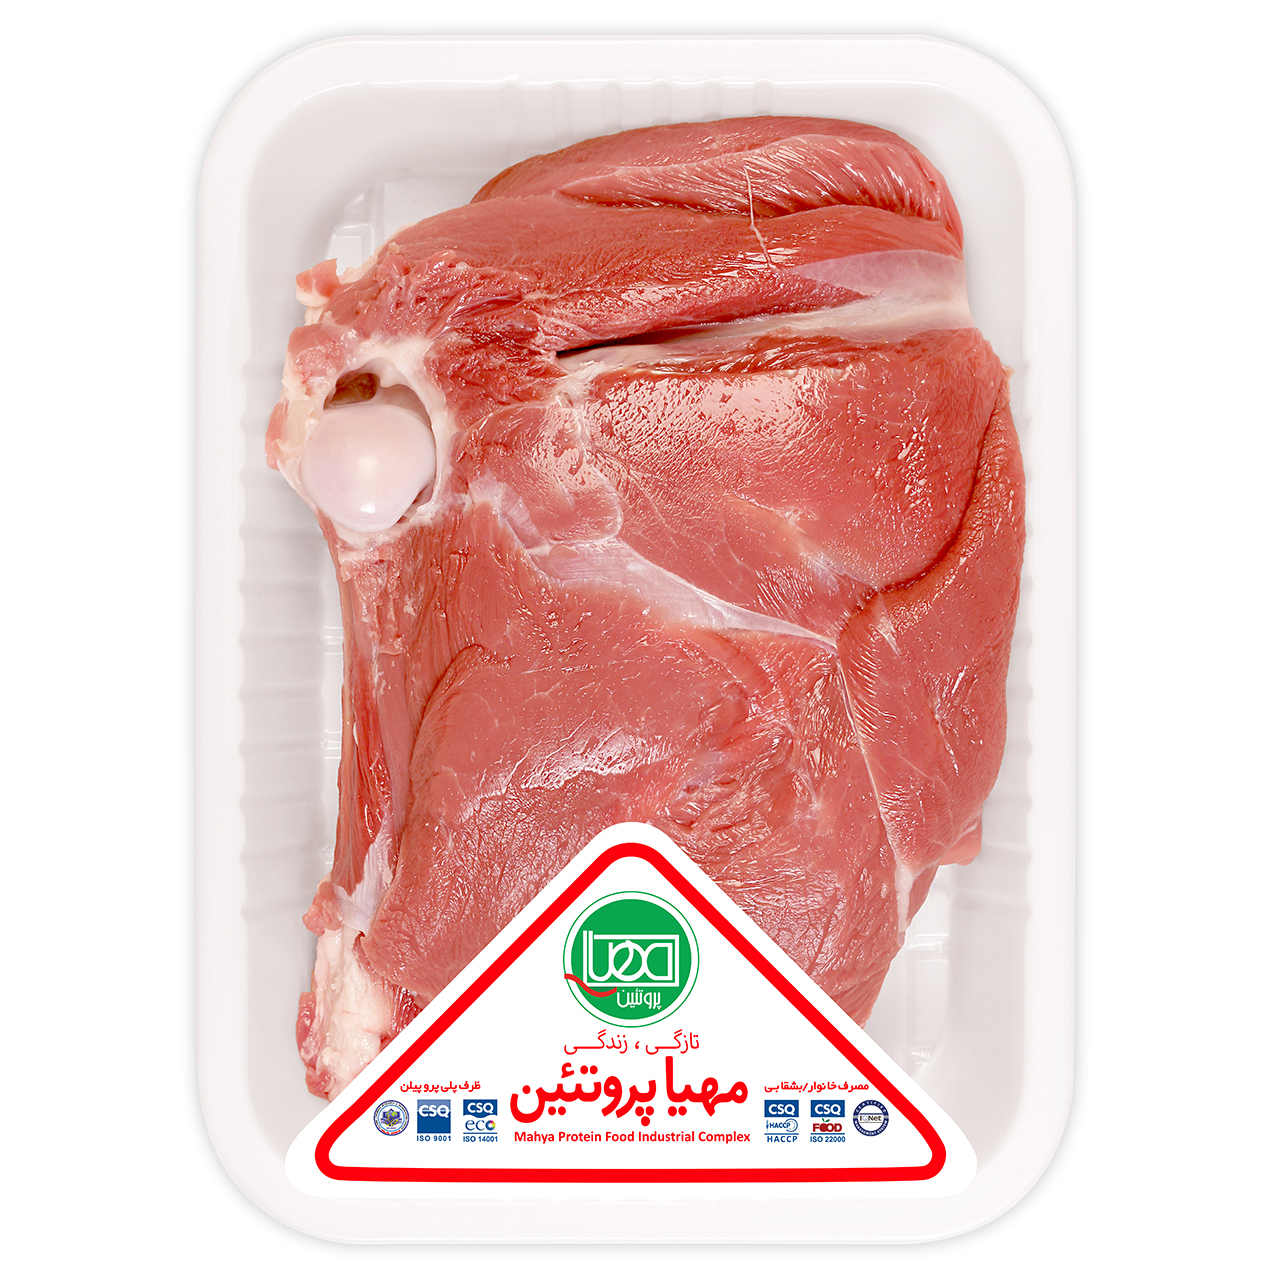 سردست بدون گردن گوسفند داخلی مهیا پروتئین مقدار 1 کیلوگرم